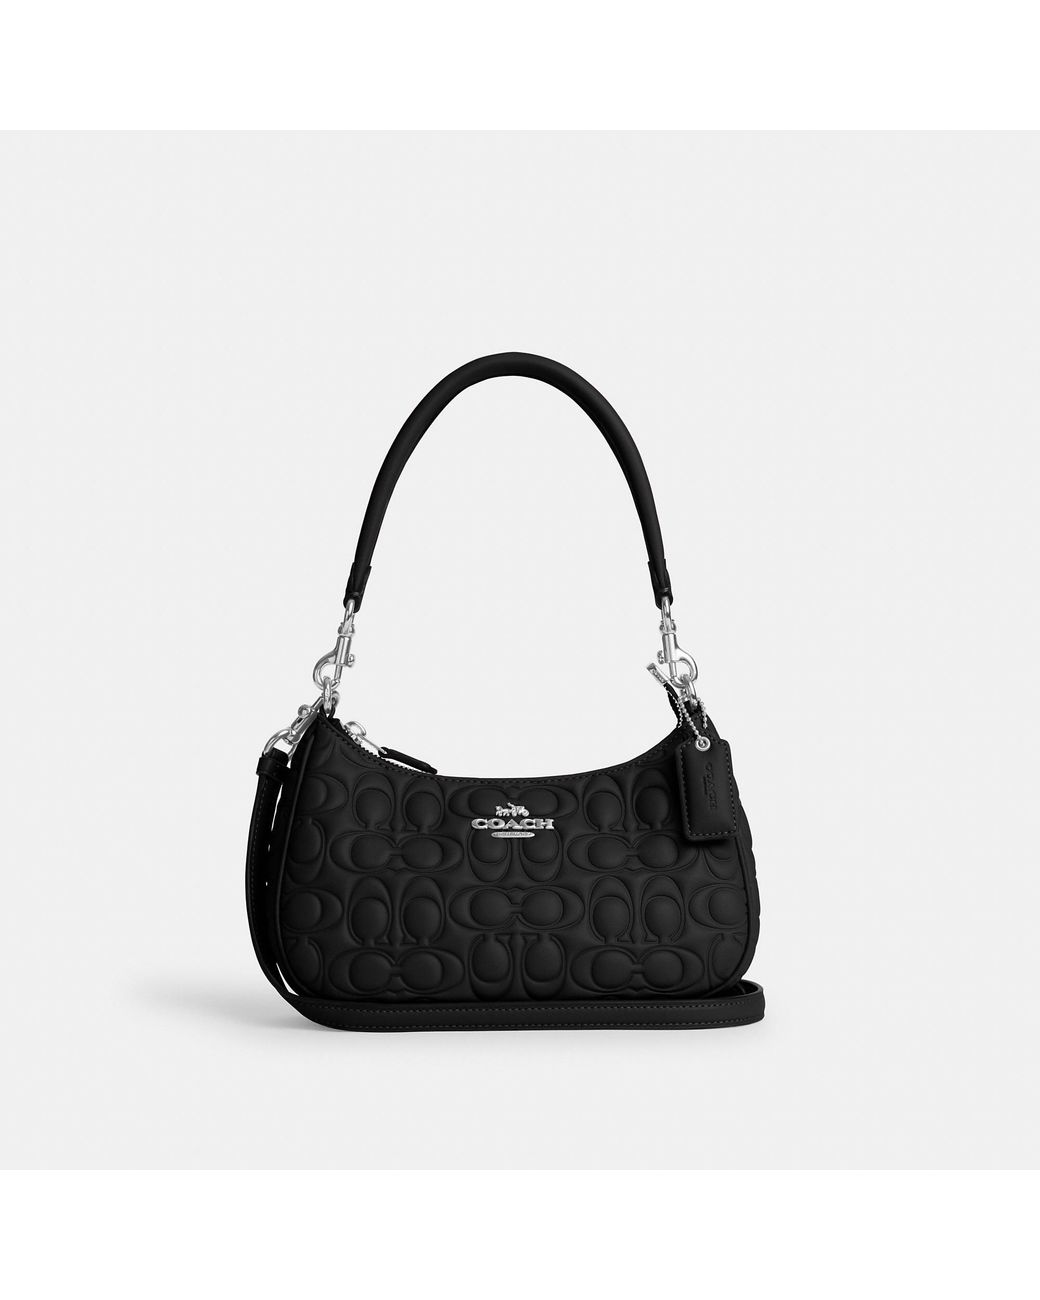 BY FAR: shoulder bag for woman - Black | By Far shoulder bag  22PFGIBSBLCFGMED online at GIGLIO.COM